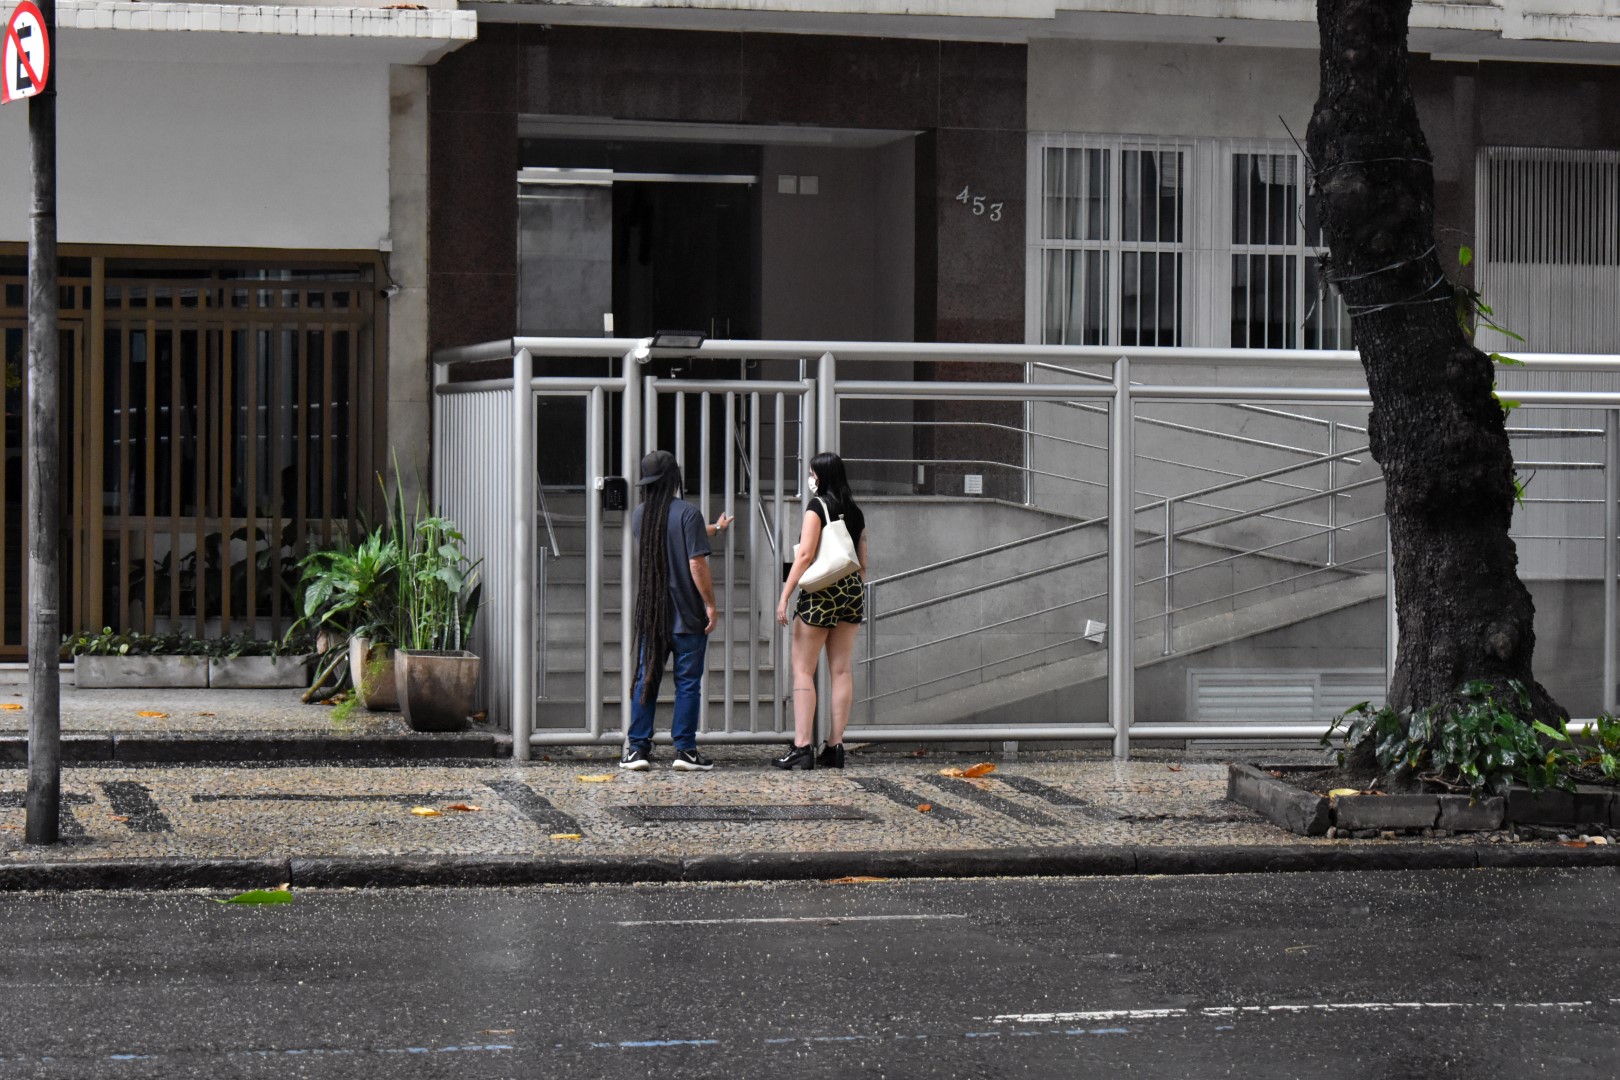 A typical fenced-off building on Av. Rainha Elisabeth, Ipanema, Rio de Janeiro